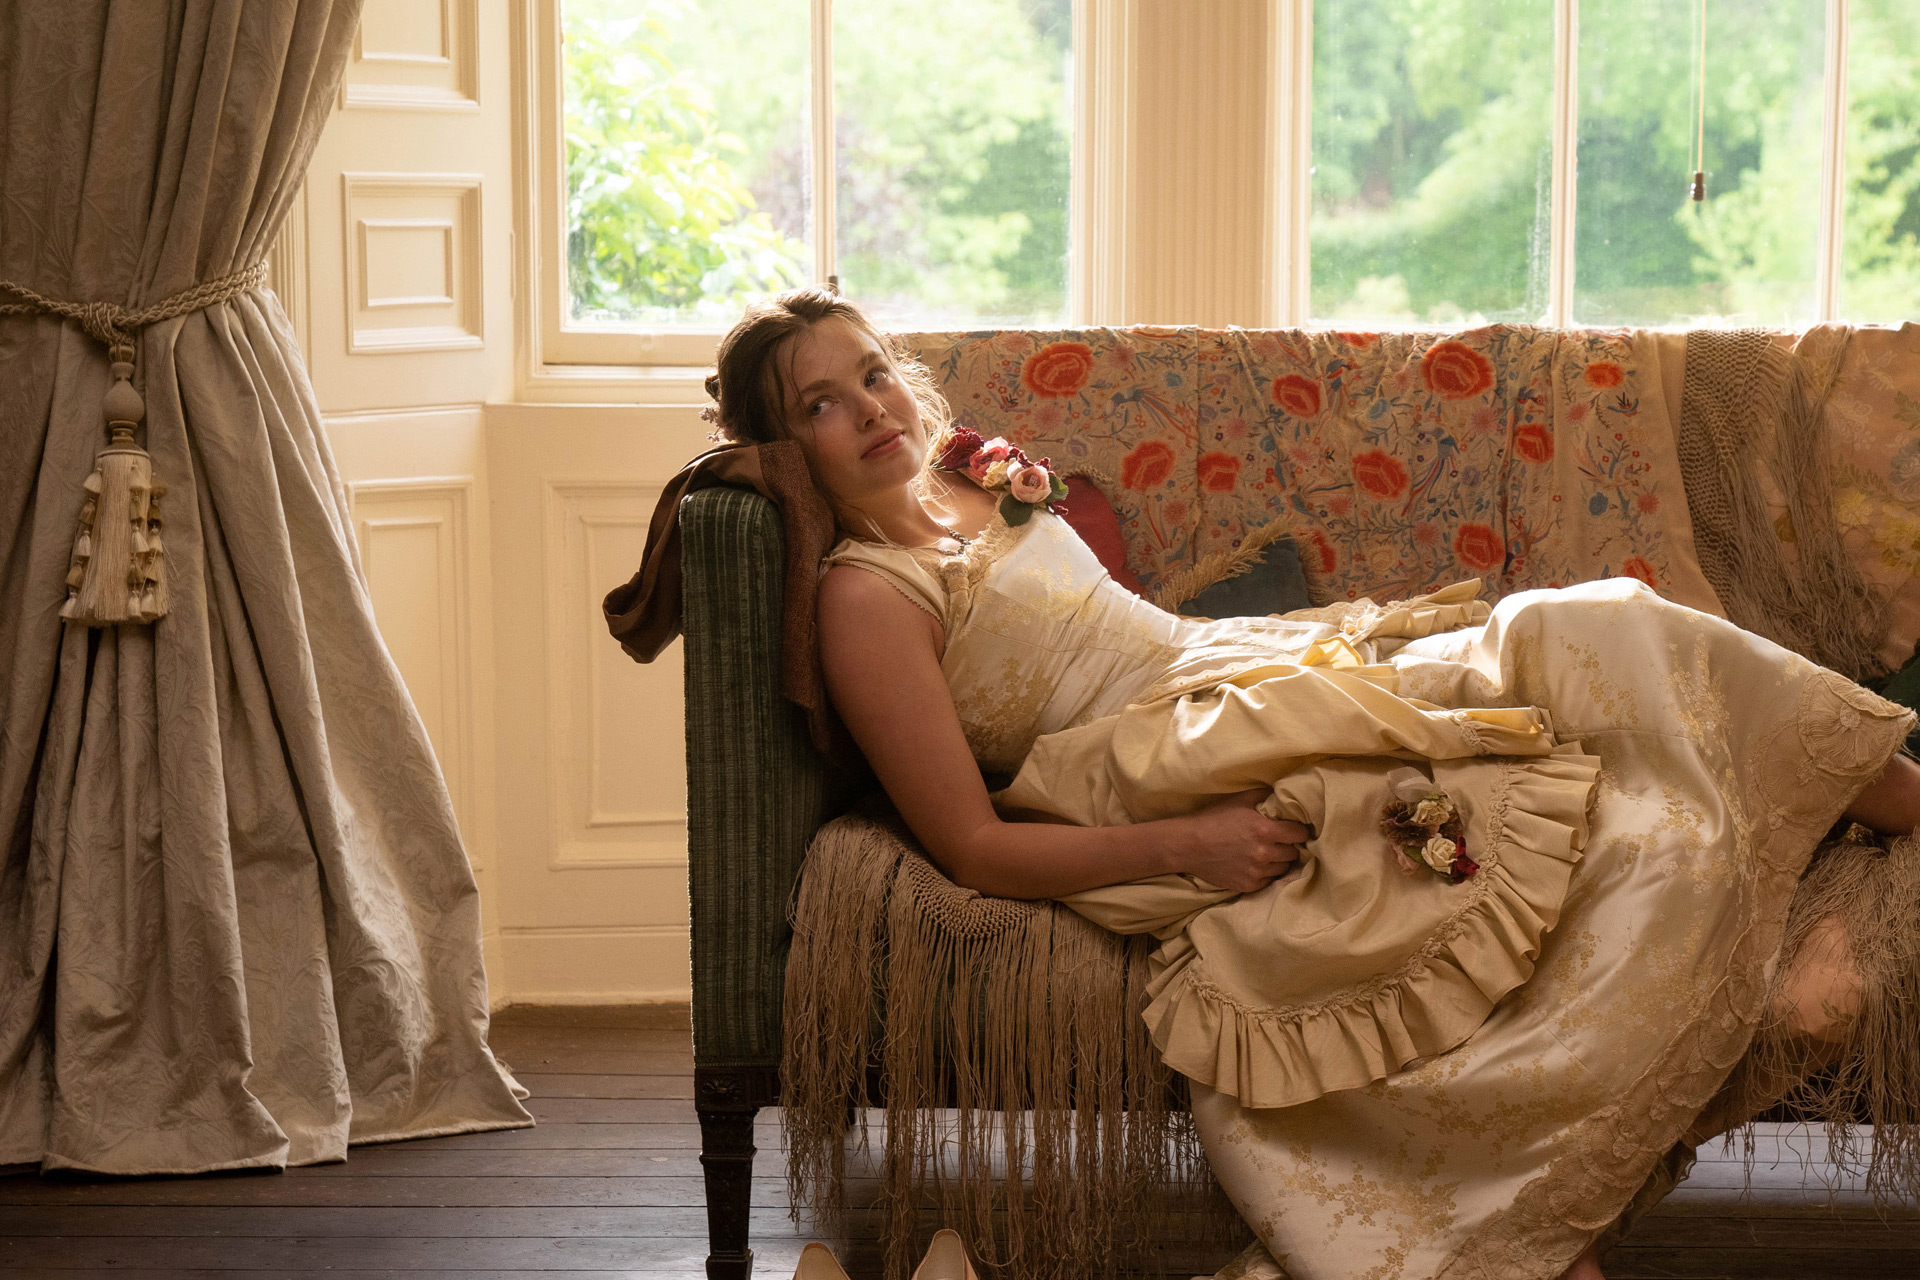 Girl in Regency costume reclining by window